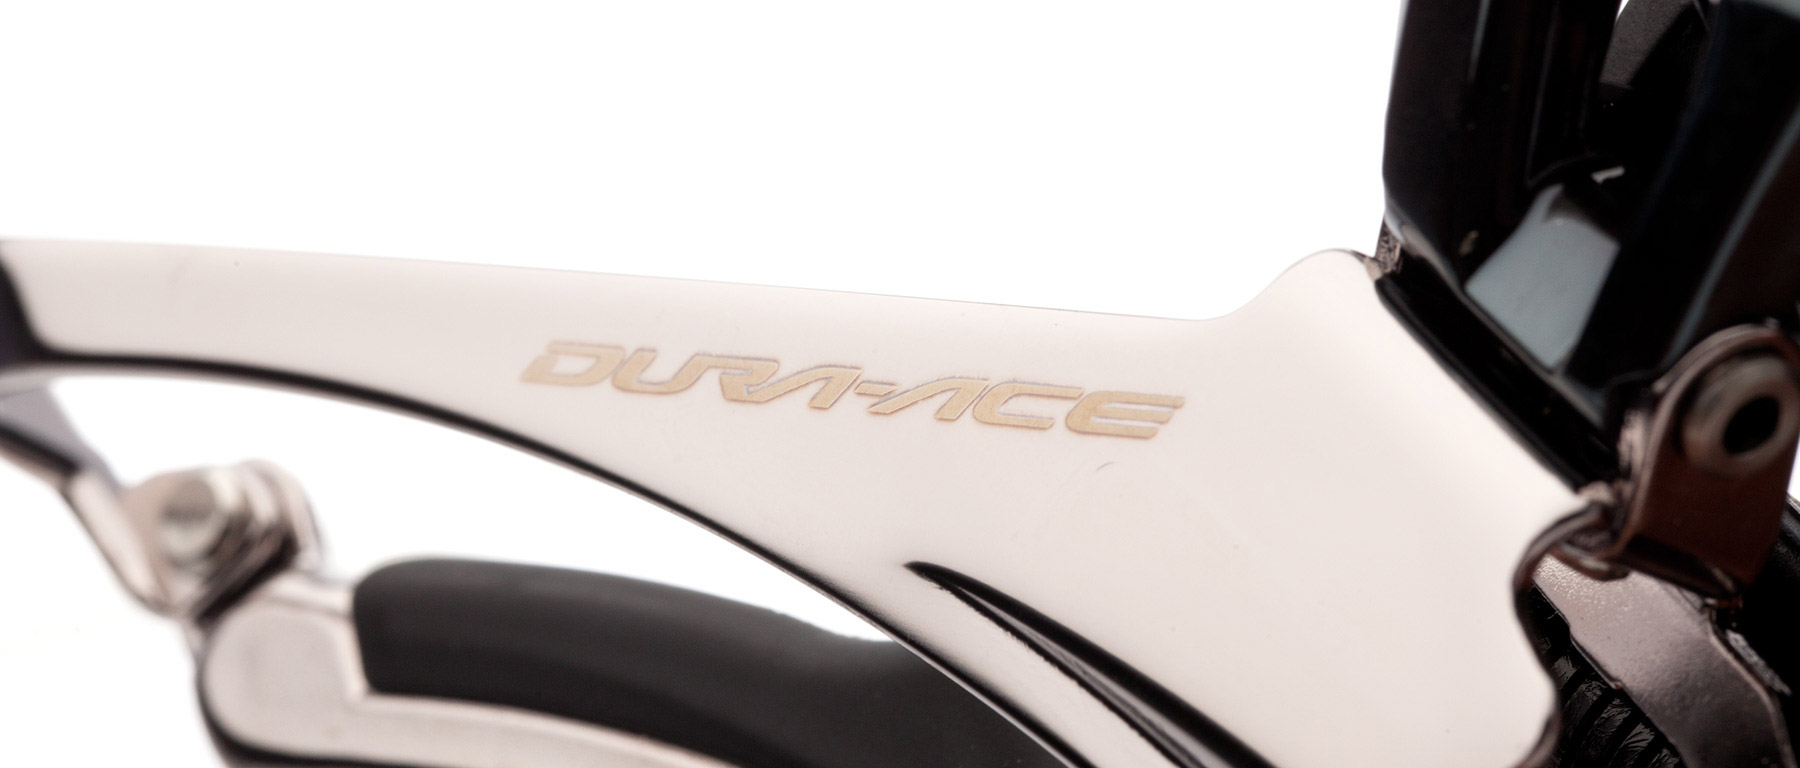 Shimano Dura-Ace FD-R9100 Front Derailleur